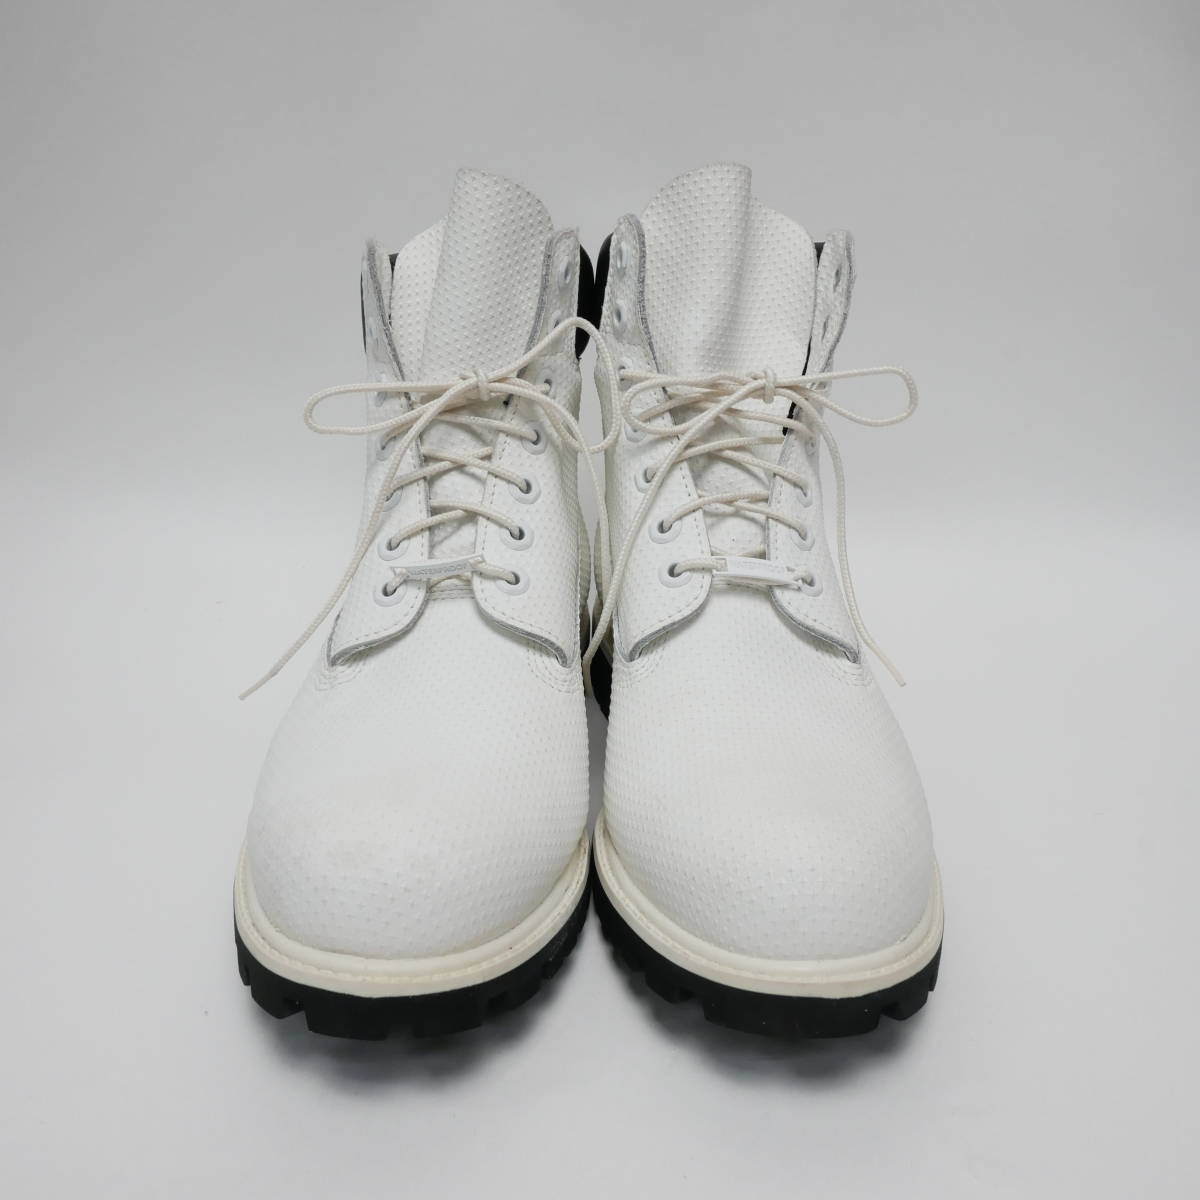 [防水] Timber land ティンバーランド HELCOR ハイカットブーツ ブーツ 靴 ヘルコアレザー メンズ サイズ10W 約28cm ホワイト/ブラック_画像2